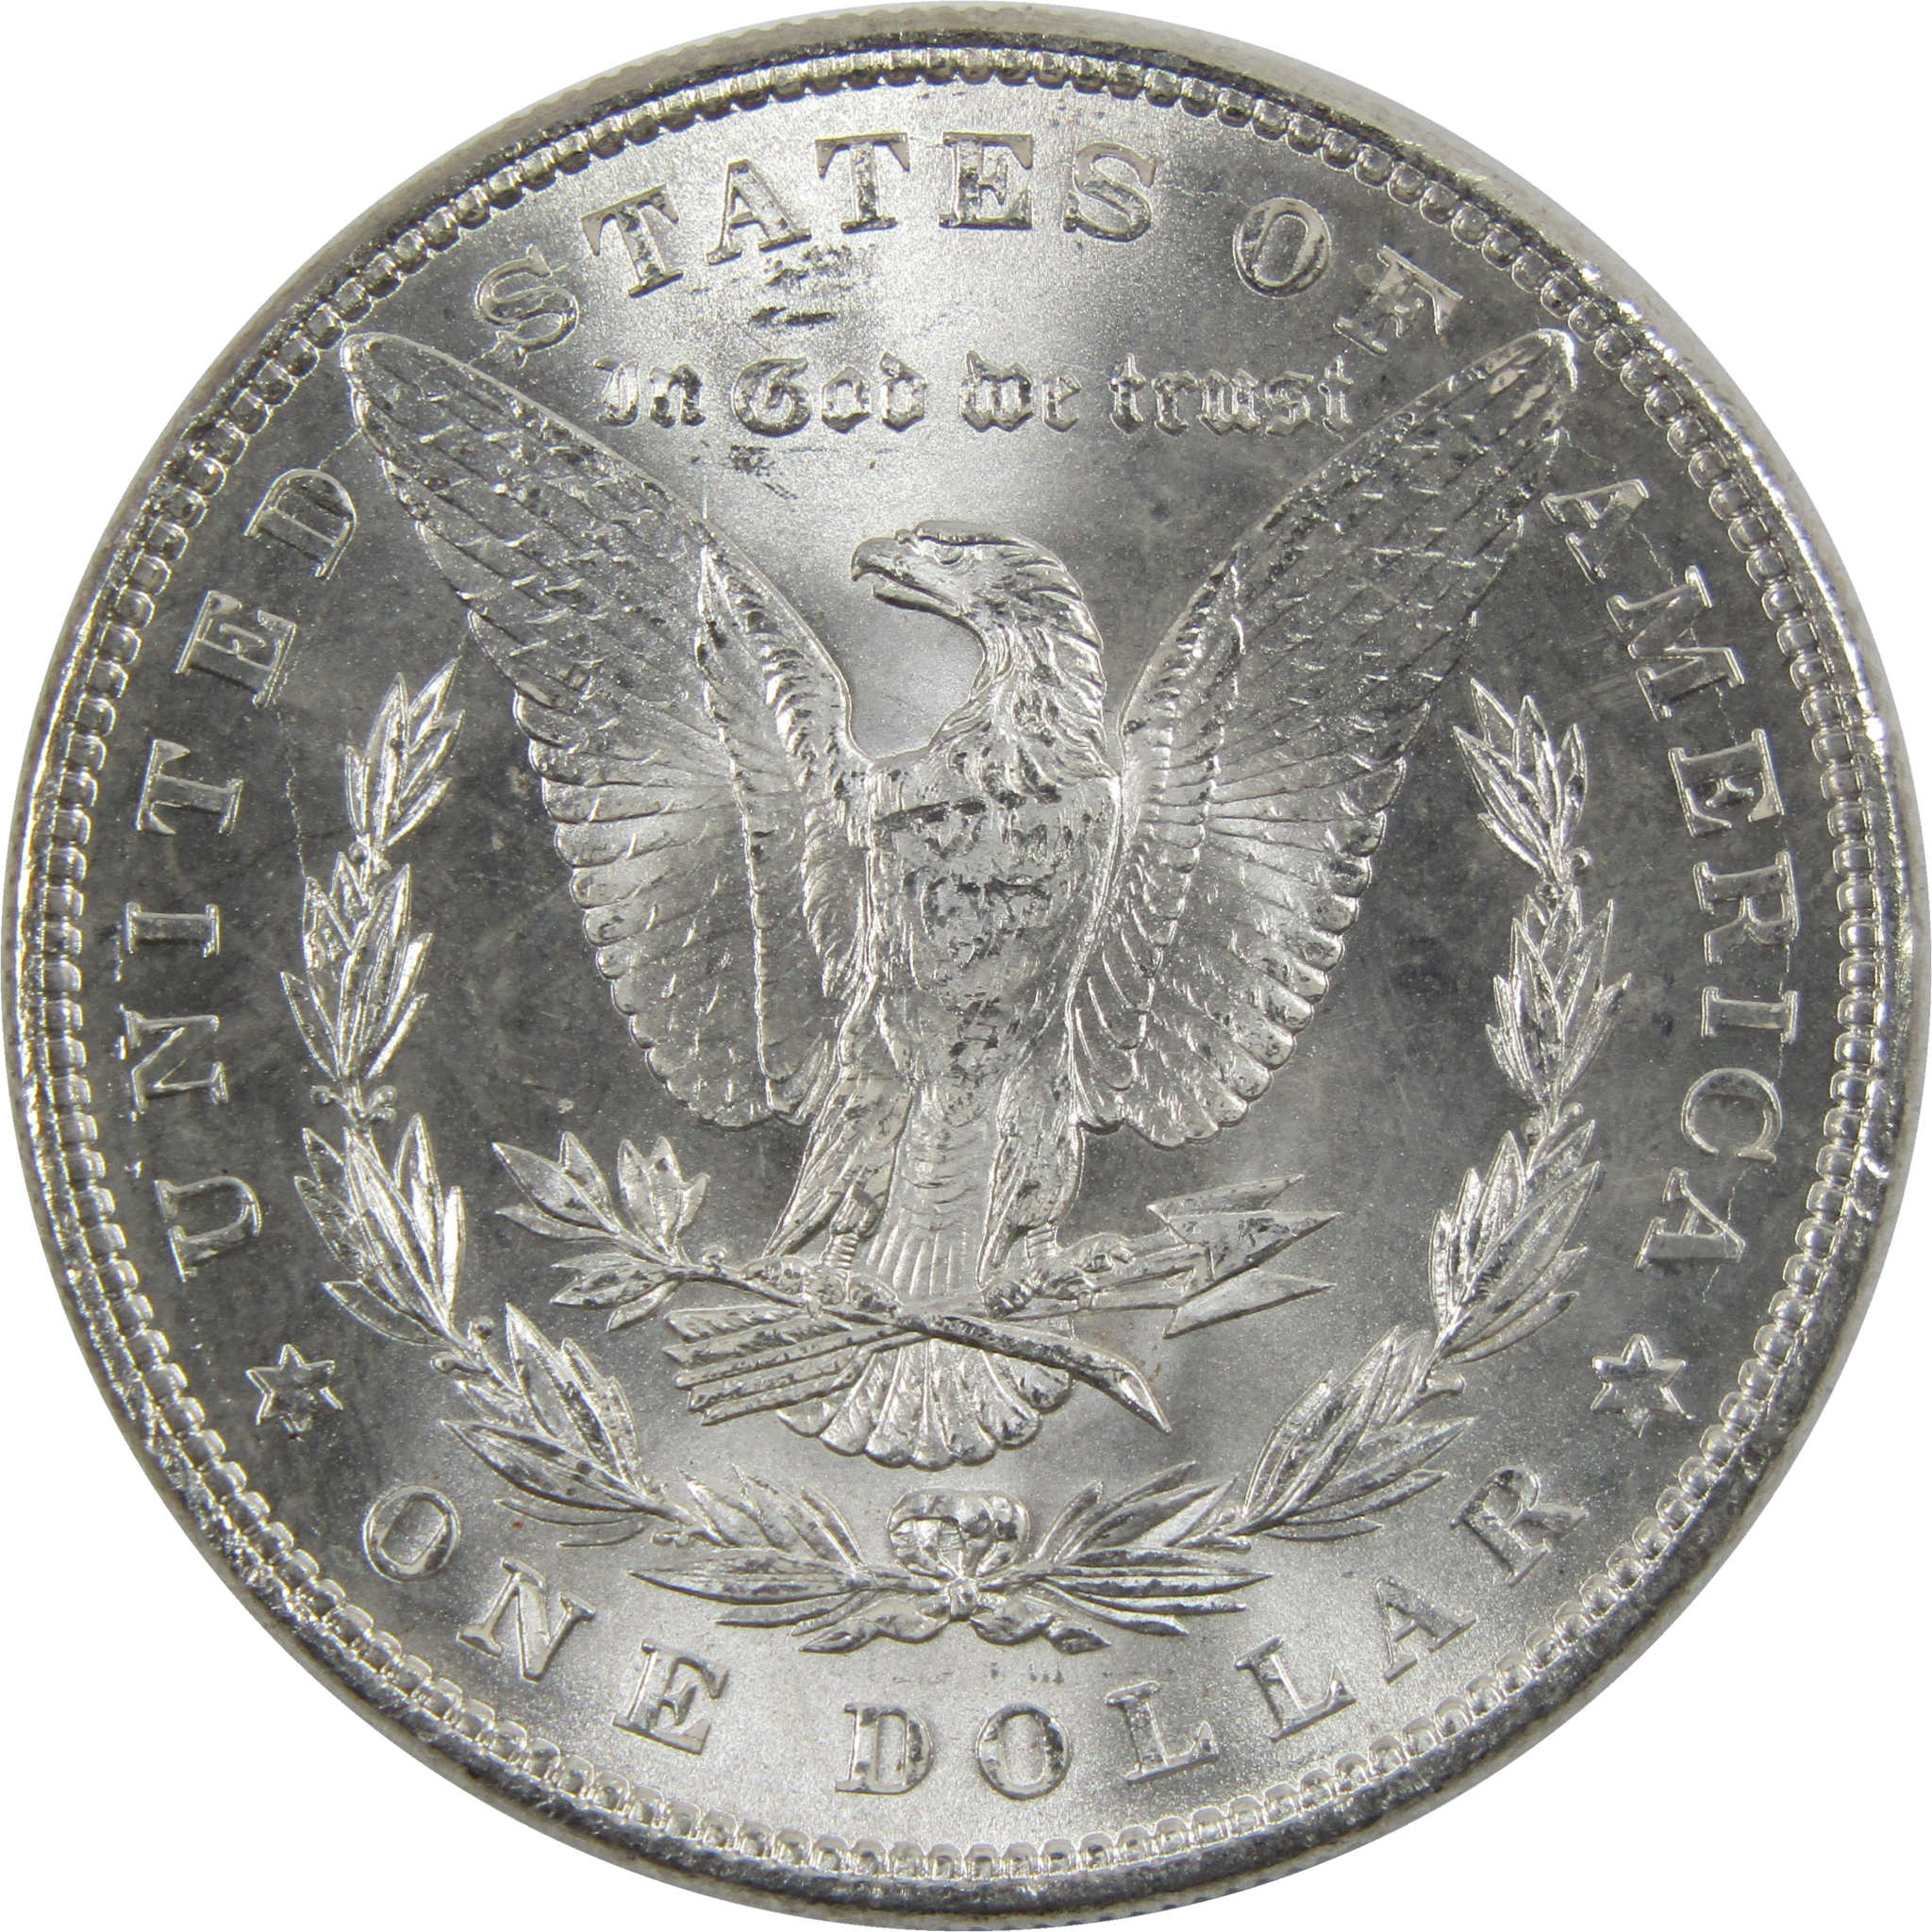 1884 Morgan Dollar BU Uncirculated 90% Silver $1 Coin SKU:I6011 - Morgan coin - Morgan silver dollar - Morgan silver dollar for sale - Profile Coins &amp; Collectibles